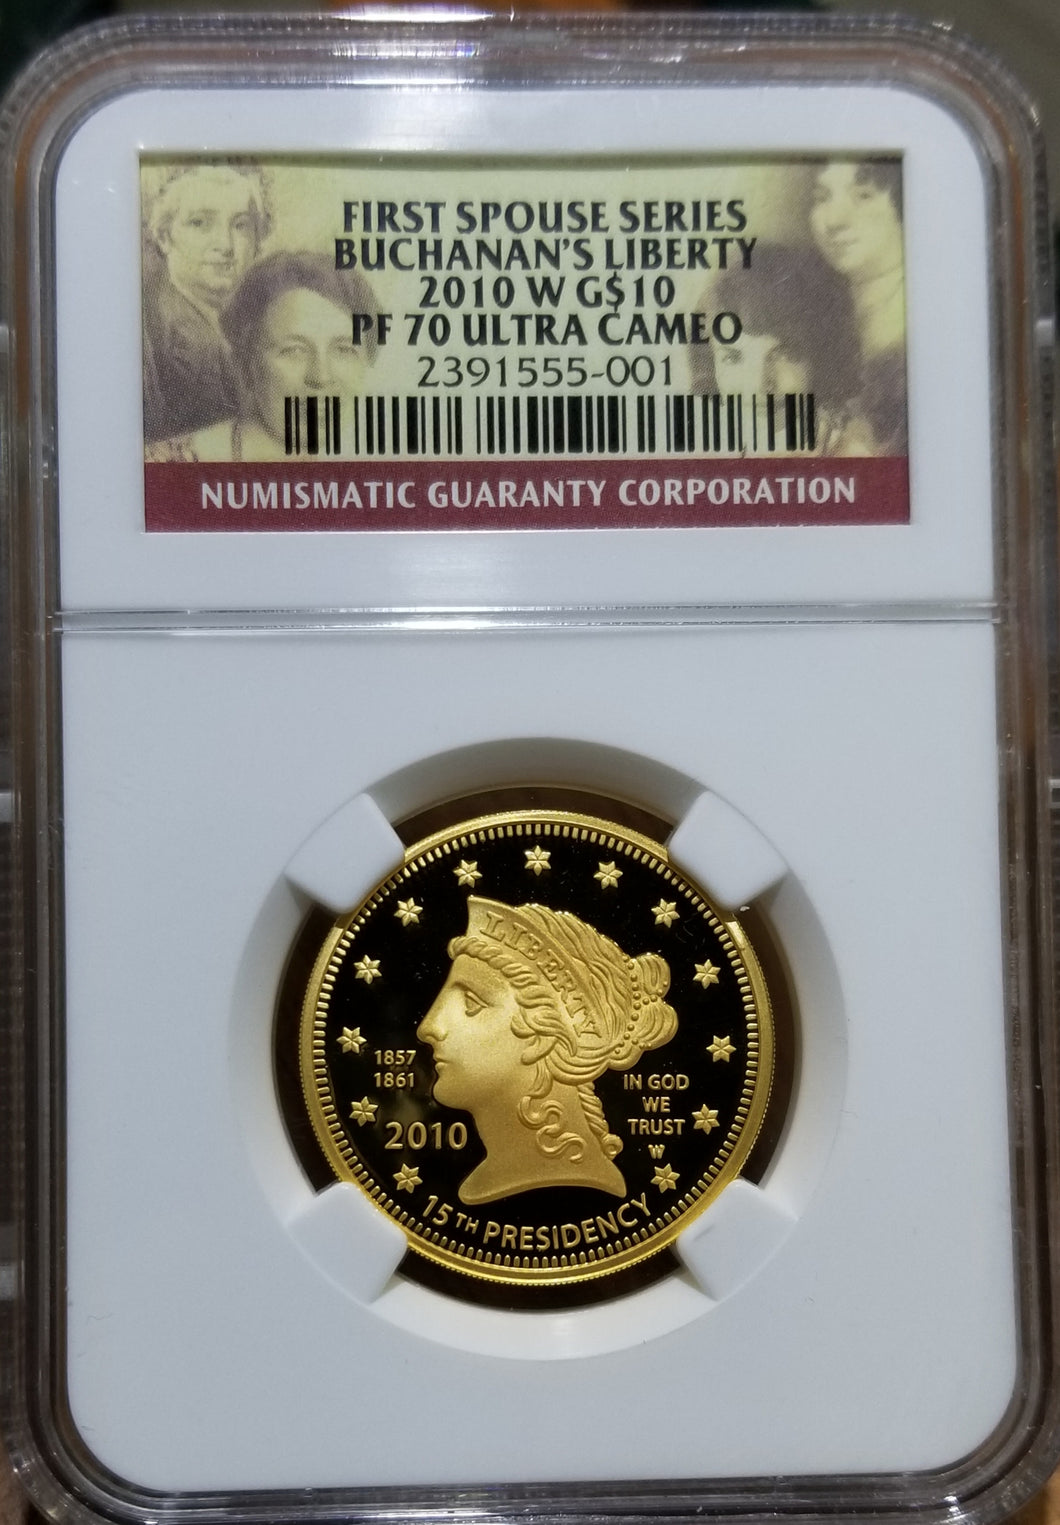 2010-W 1/2 oz Buchanan's Liberty Spouse Gold NGC PF 70